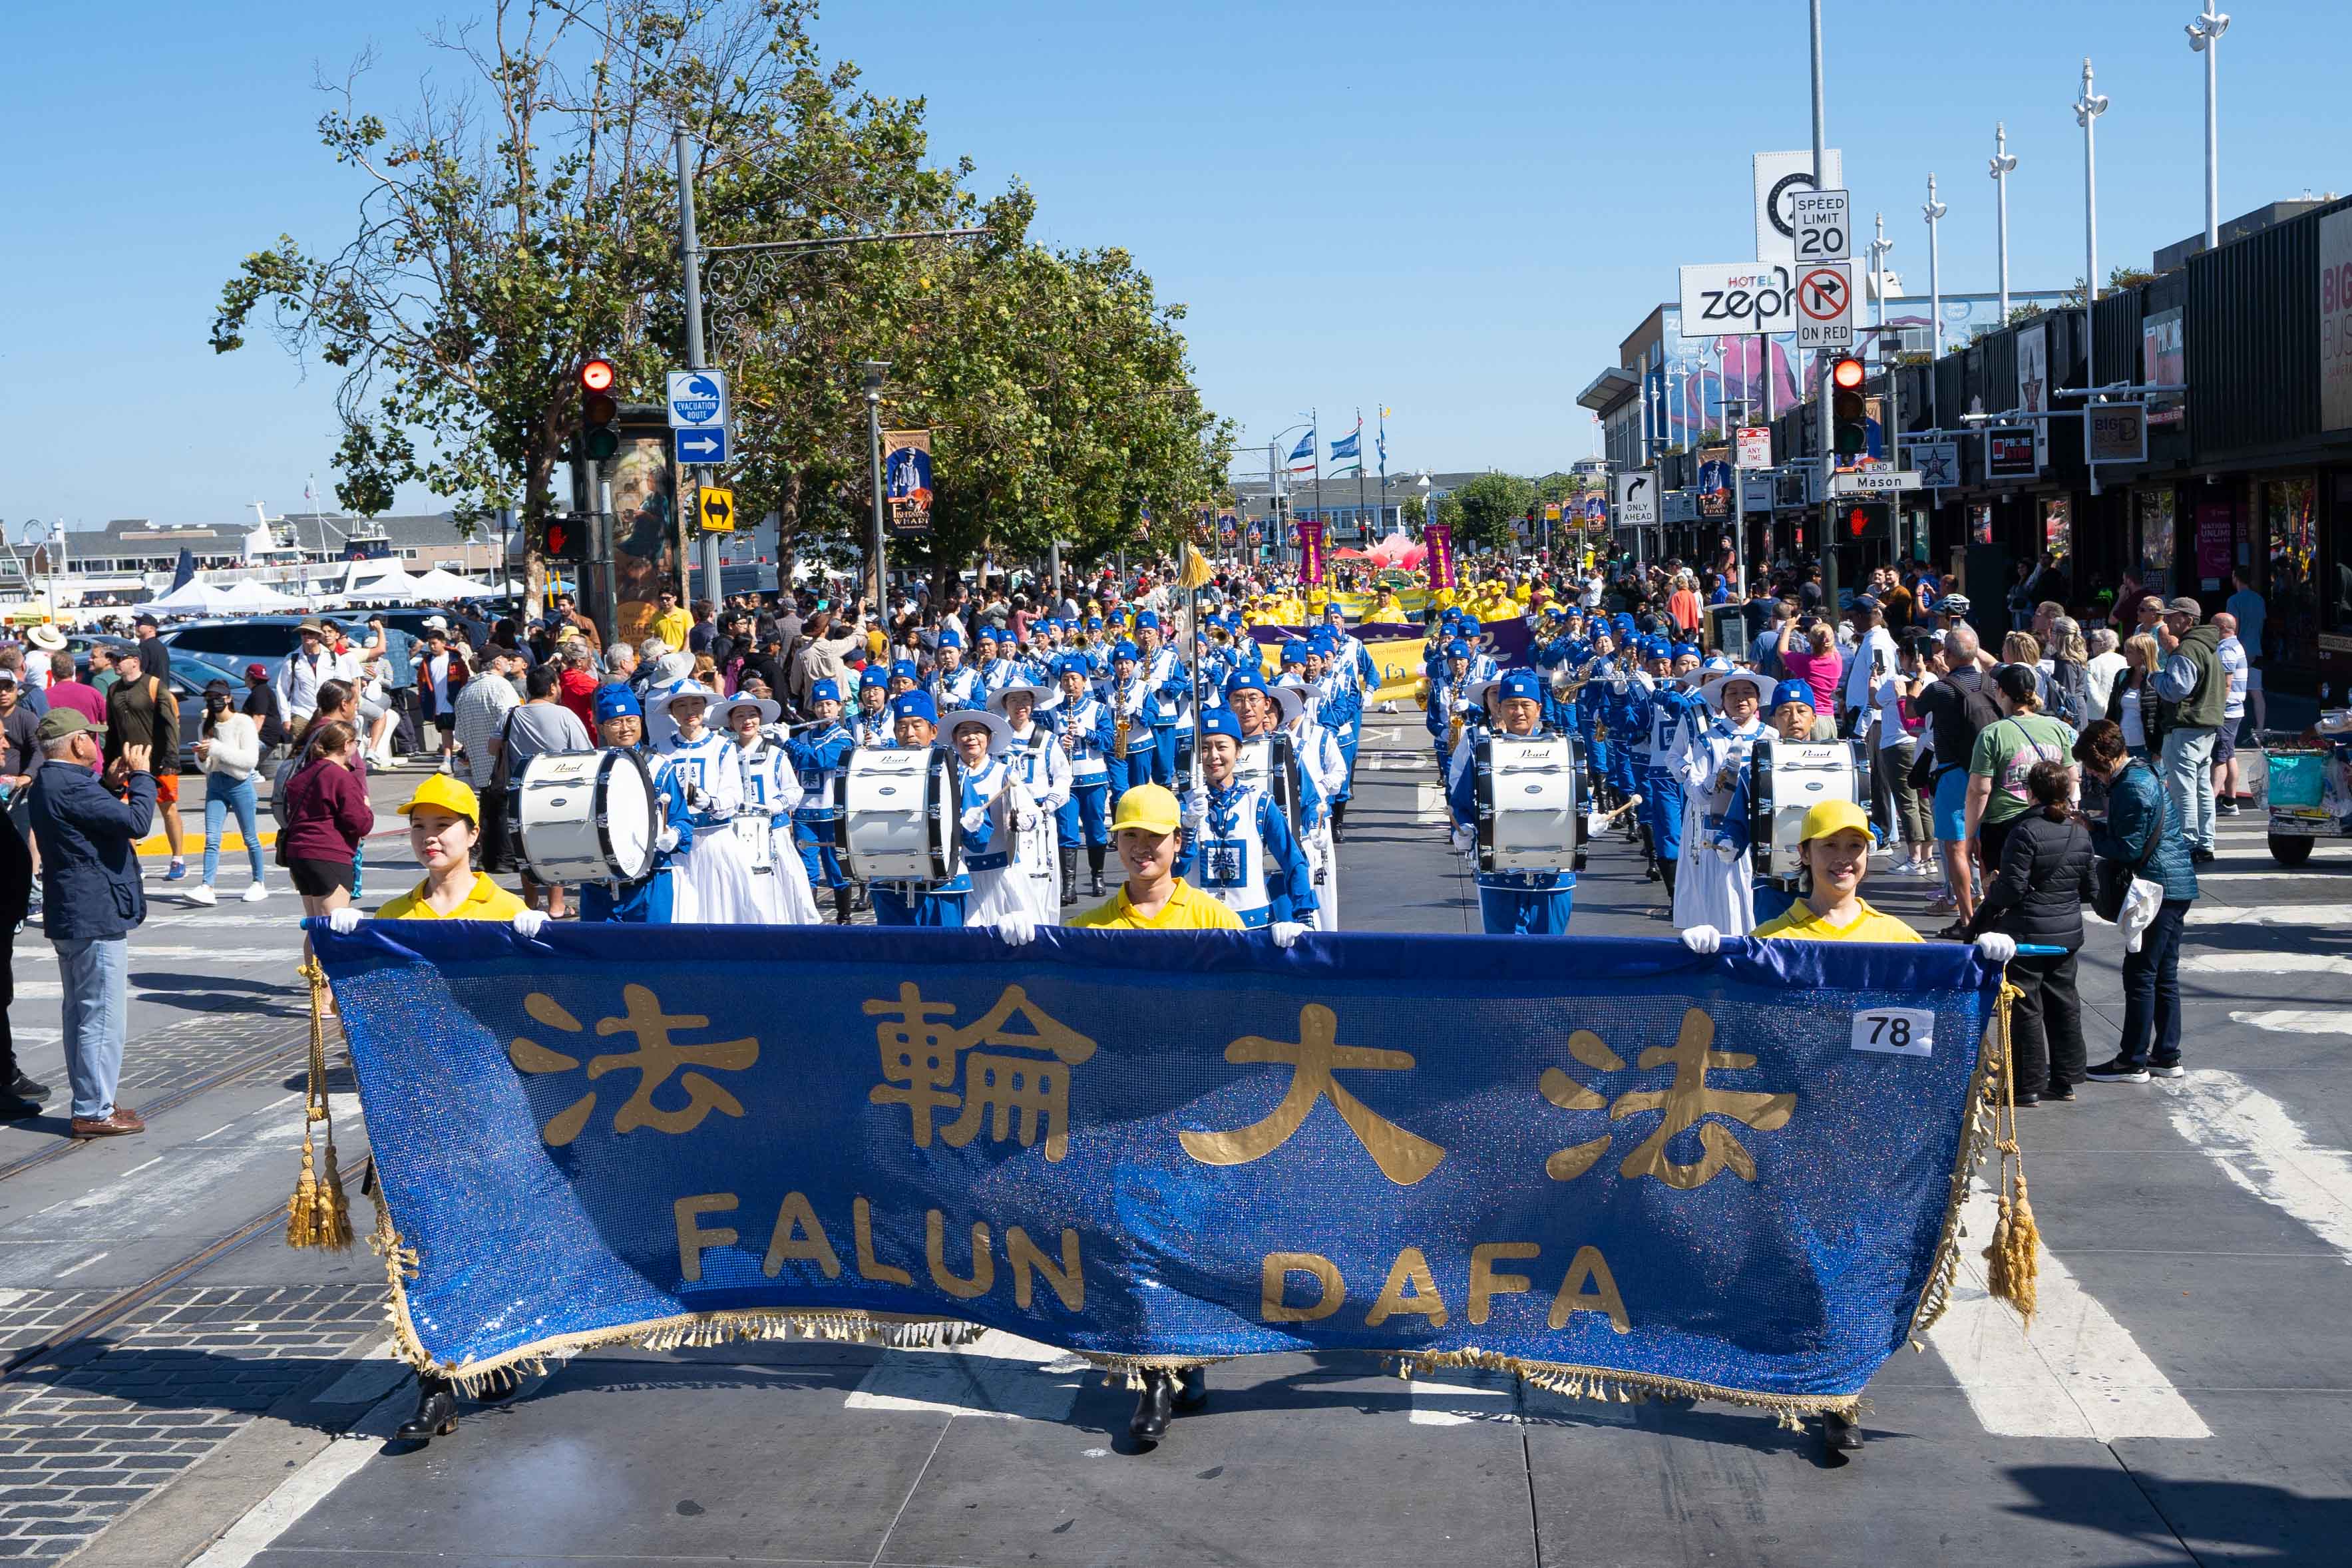 Image for article São Francisco, EUA: Falun Dafa é bem recebido na Parada da Herança Italiana